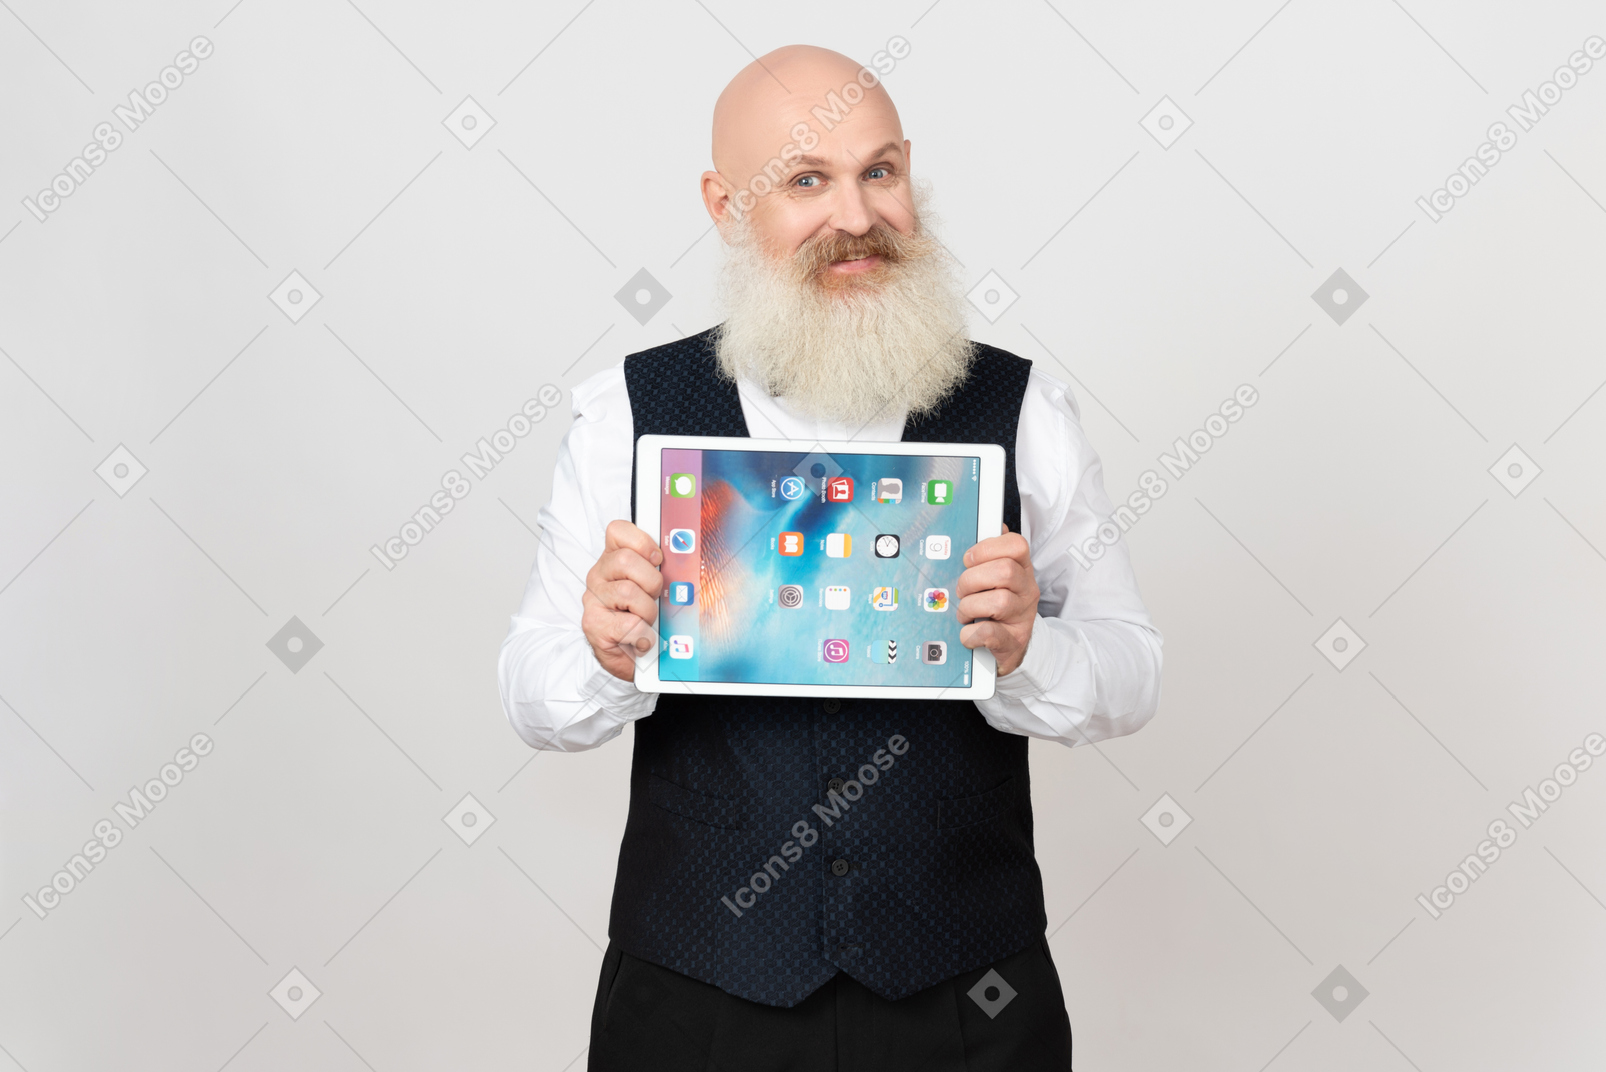 Uomo invecchiato sorridente tenendo ipad con entrambe le mani